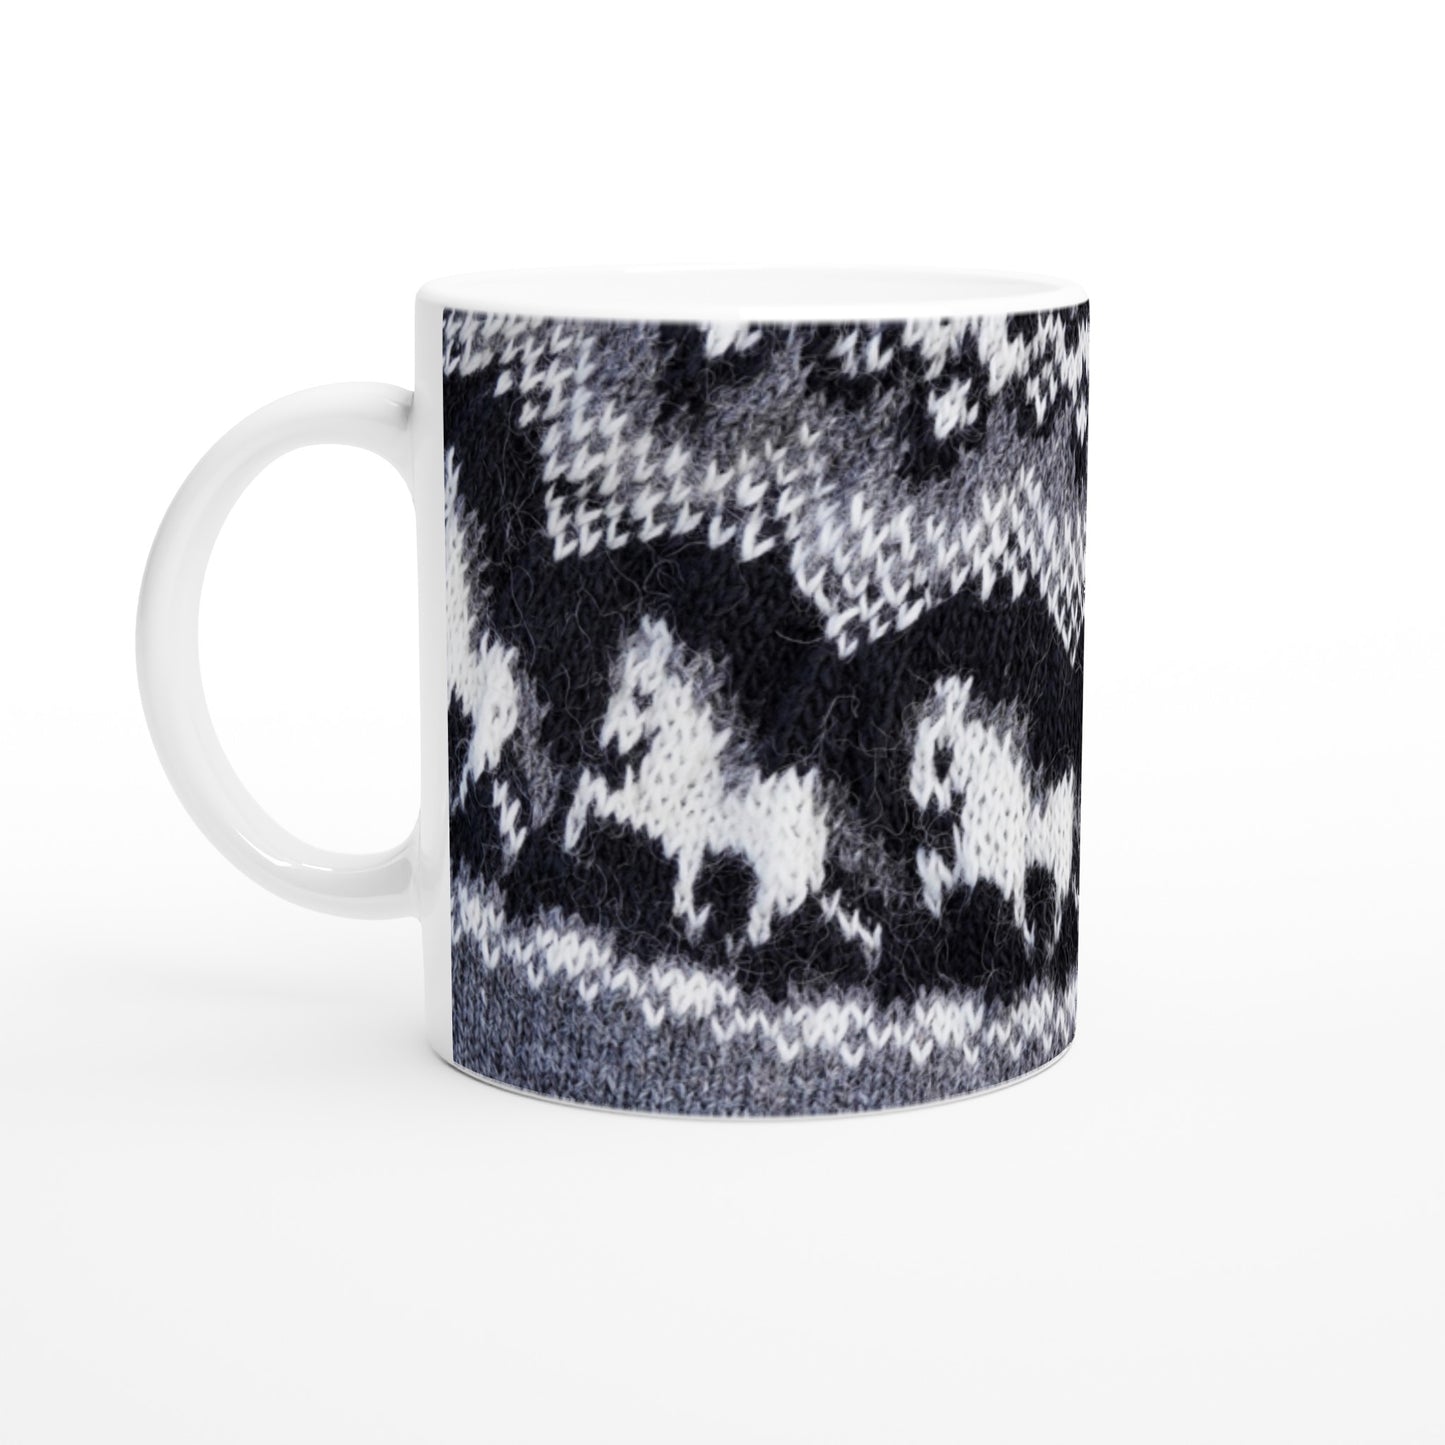 Mug with Icelandic knit pattern - Tölt (grey)